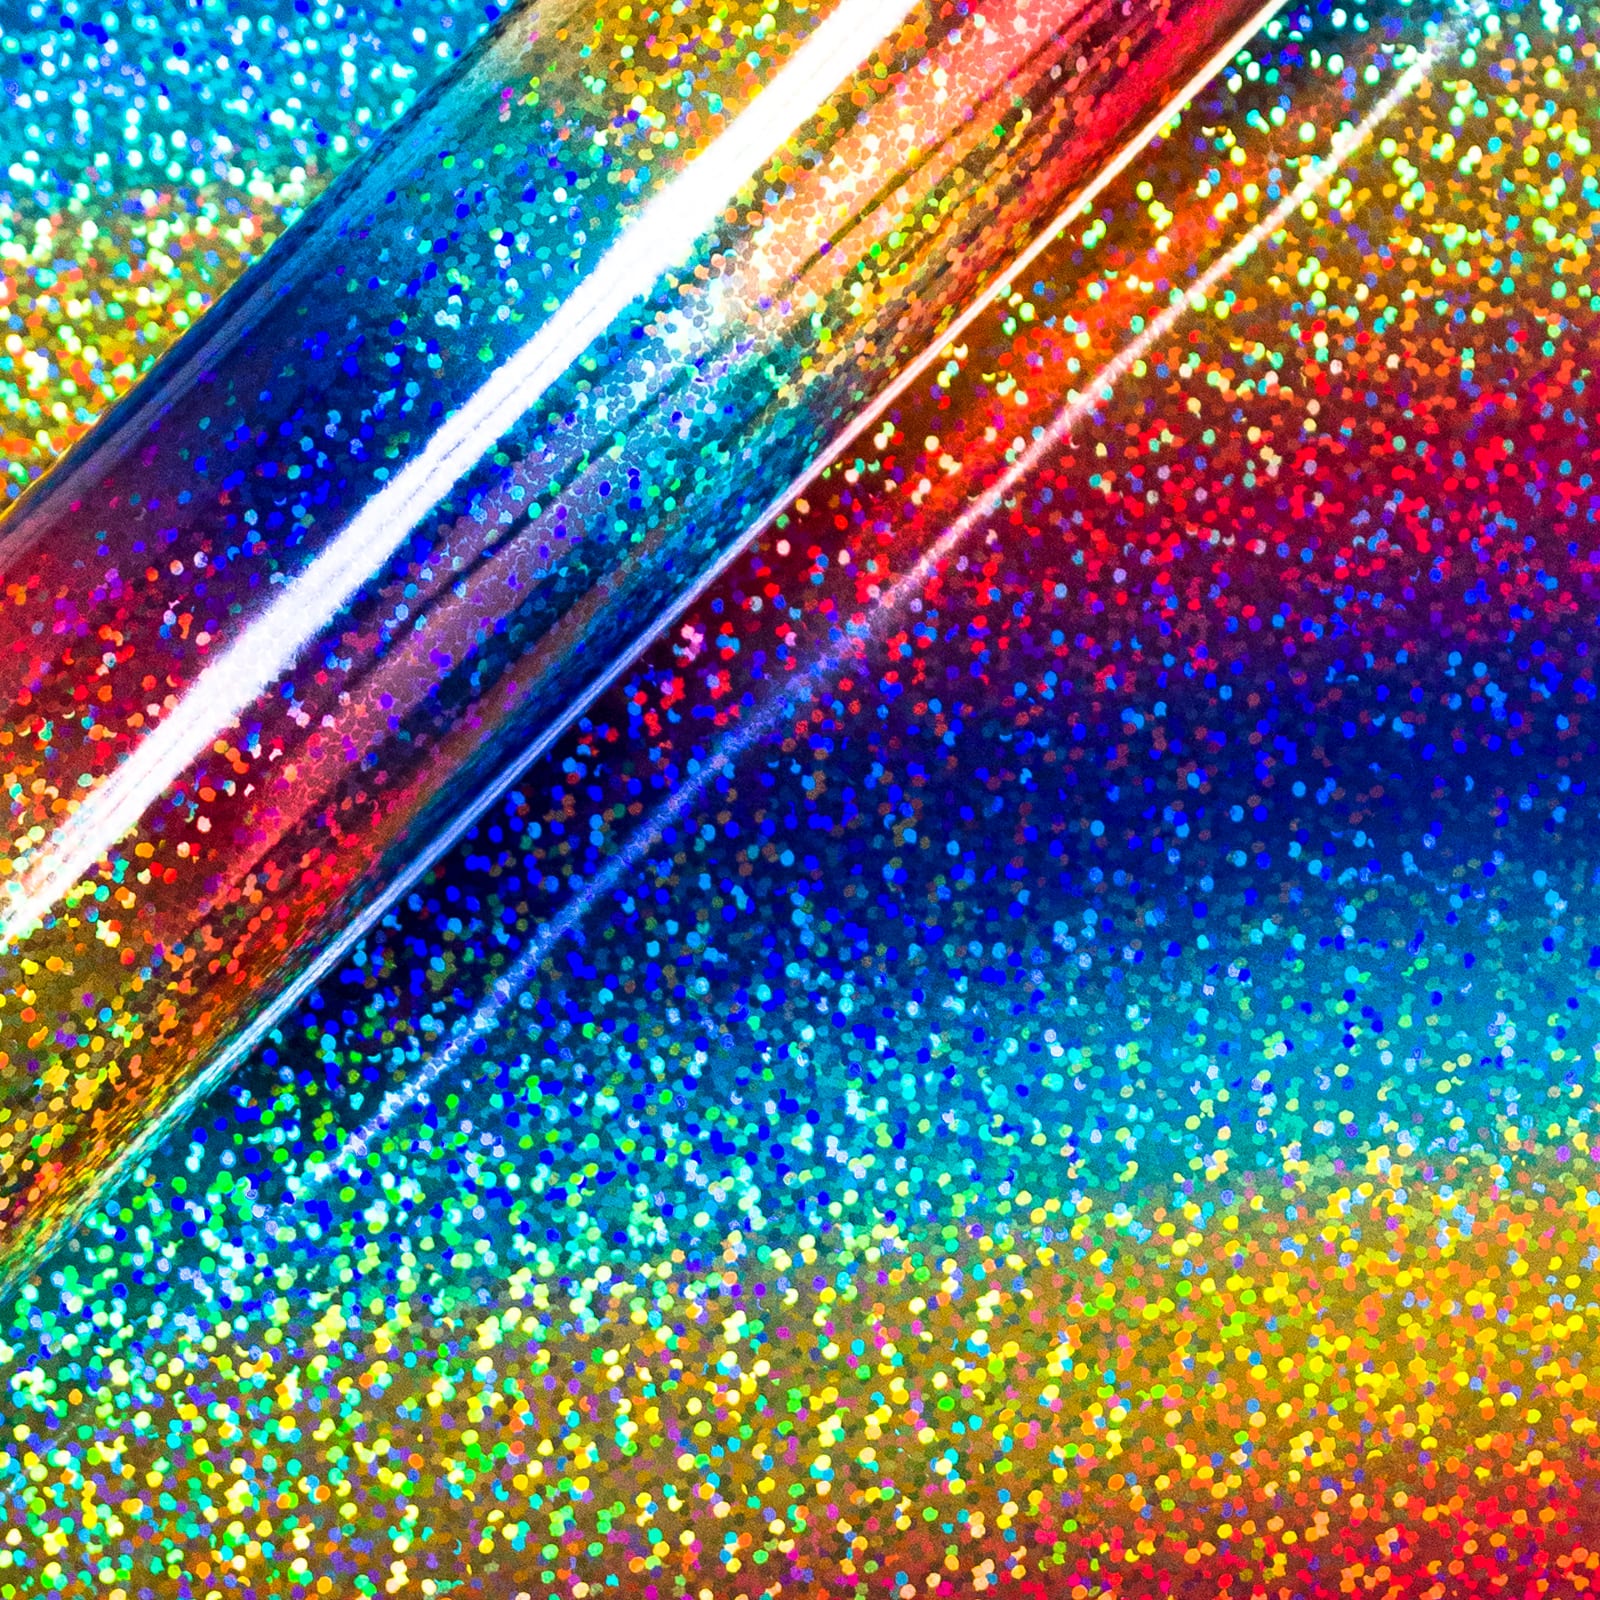 Rainbow Siser Holographic Heat Transfer Vinyl (HTV) (Bulk Rolls)